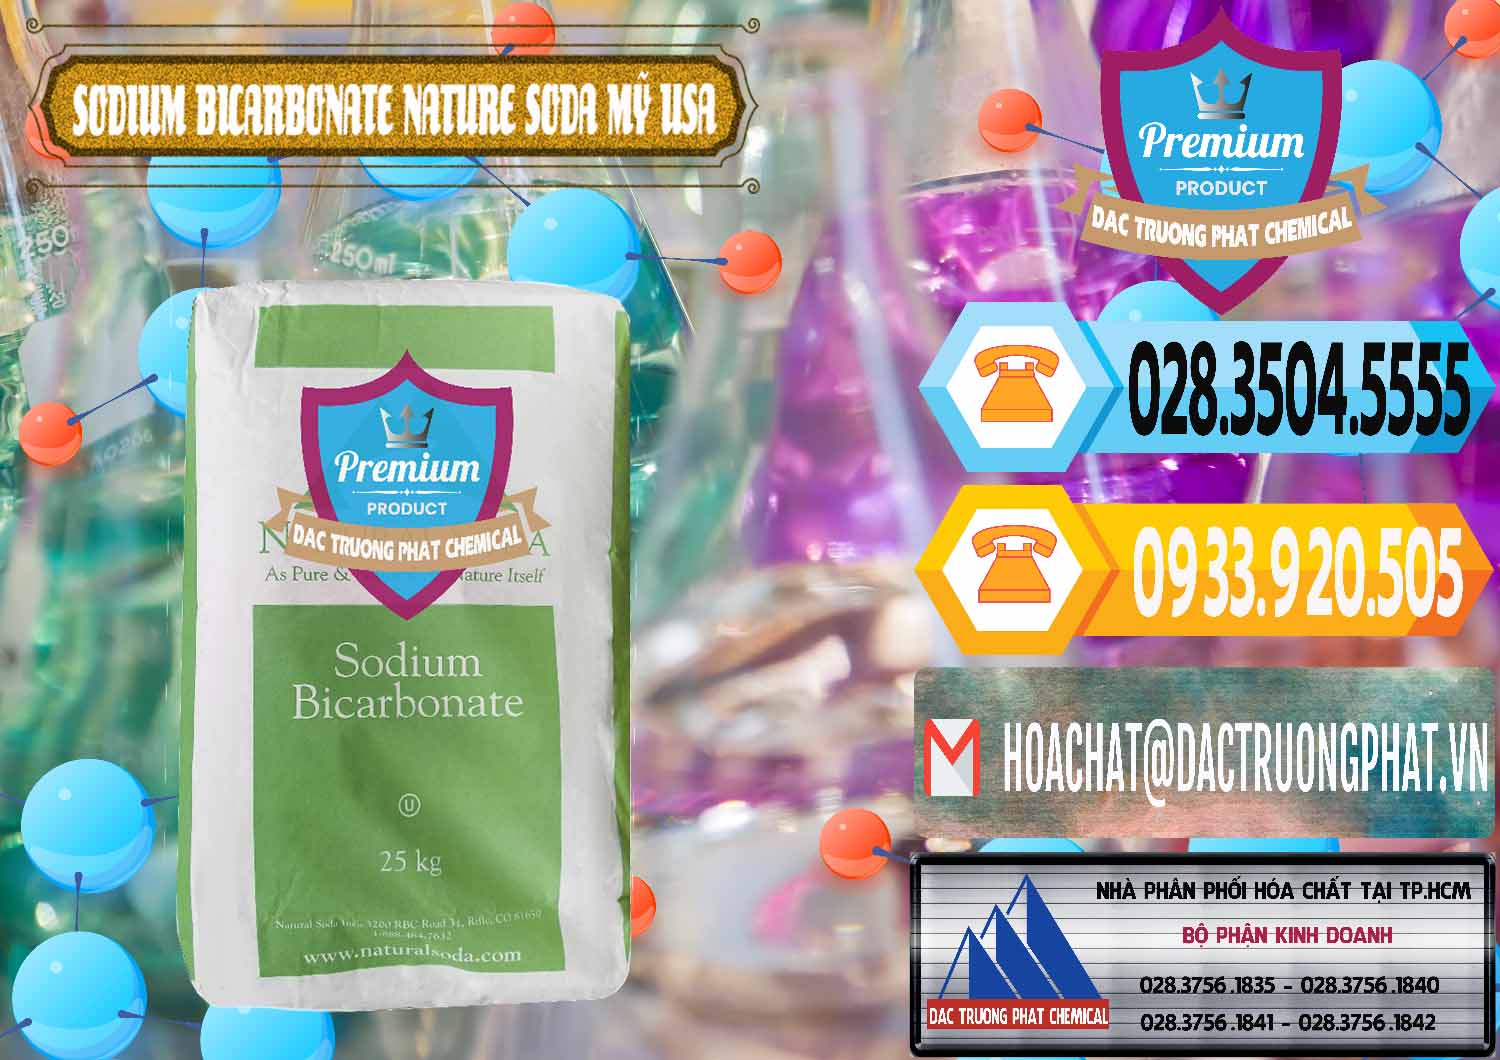 Bán & cung cấp Sodium Bicarbonate – Bicar NaHCO3 Food Grade Nature Soda Mỹ USA - 0256 - Nơi chuyên bán _ cung cấp hóa chất tại TP.HCM - hoachattayrua.net